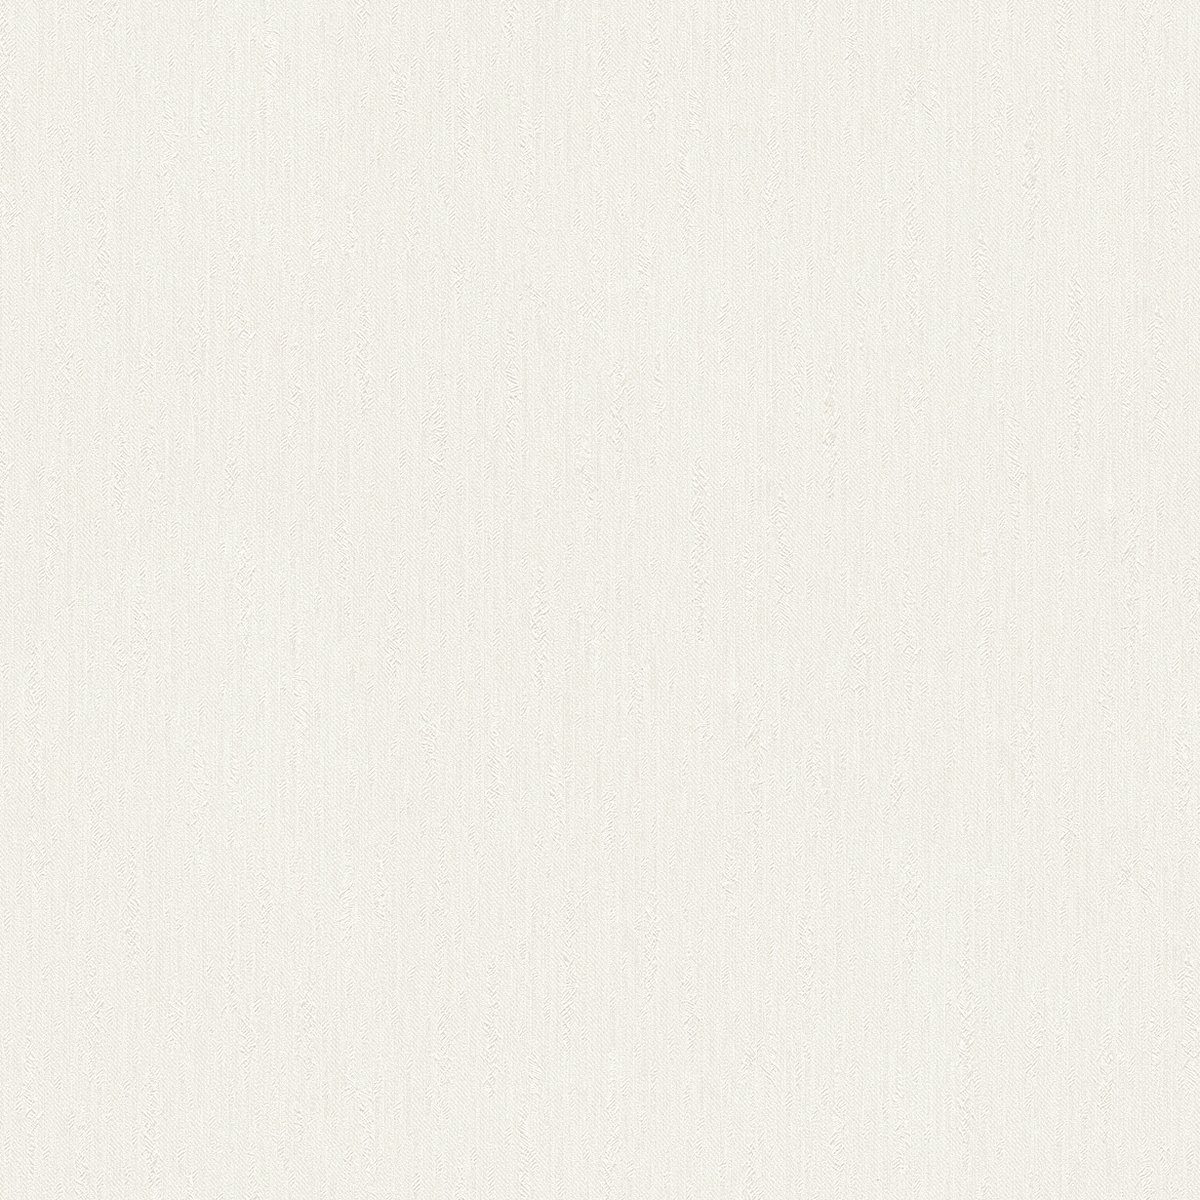 A.S. Création Vinyltapete, Unitapete Uni einfarbig Weiß 345037 Tapete Château 5 Wandtapete